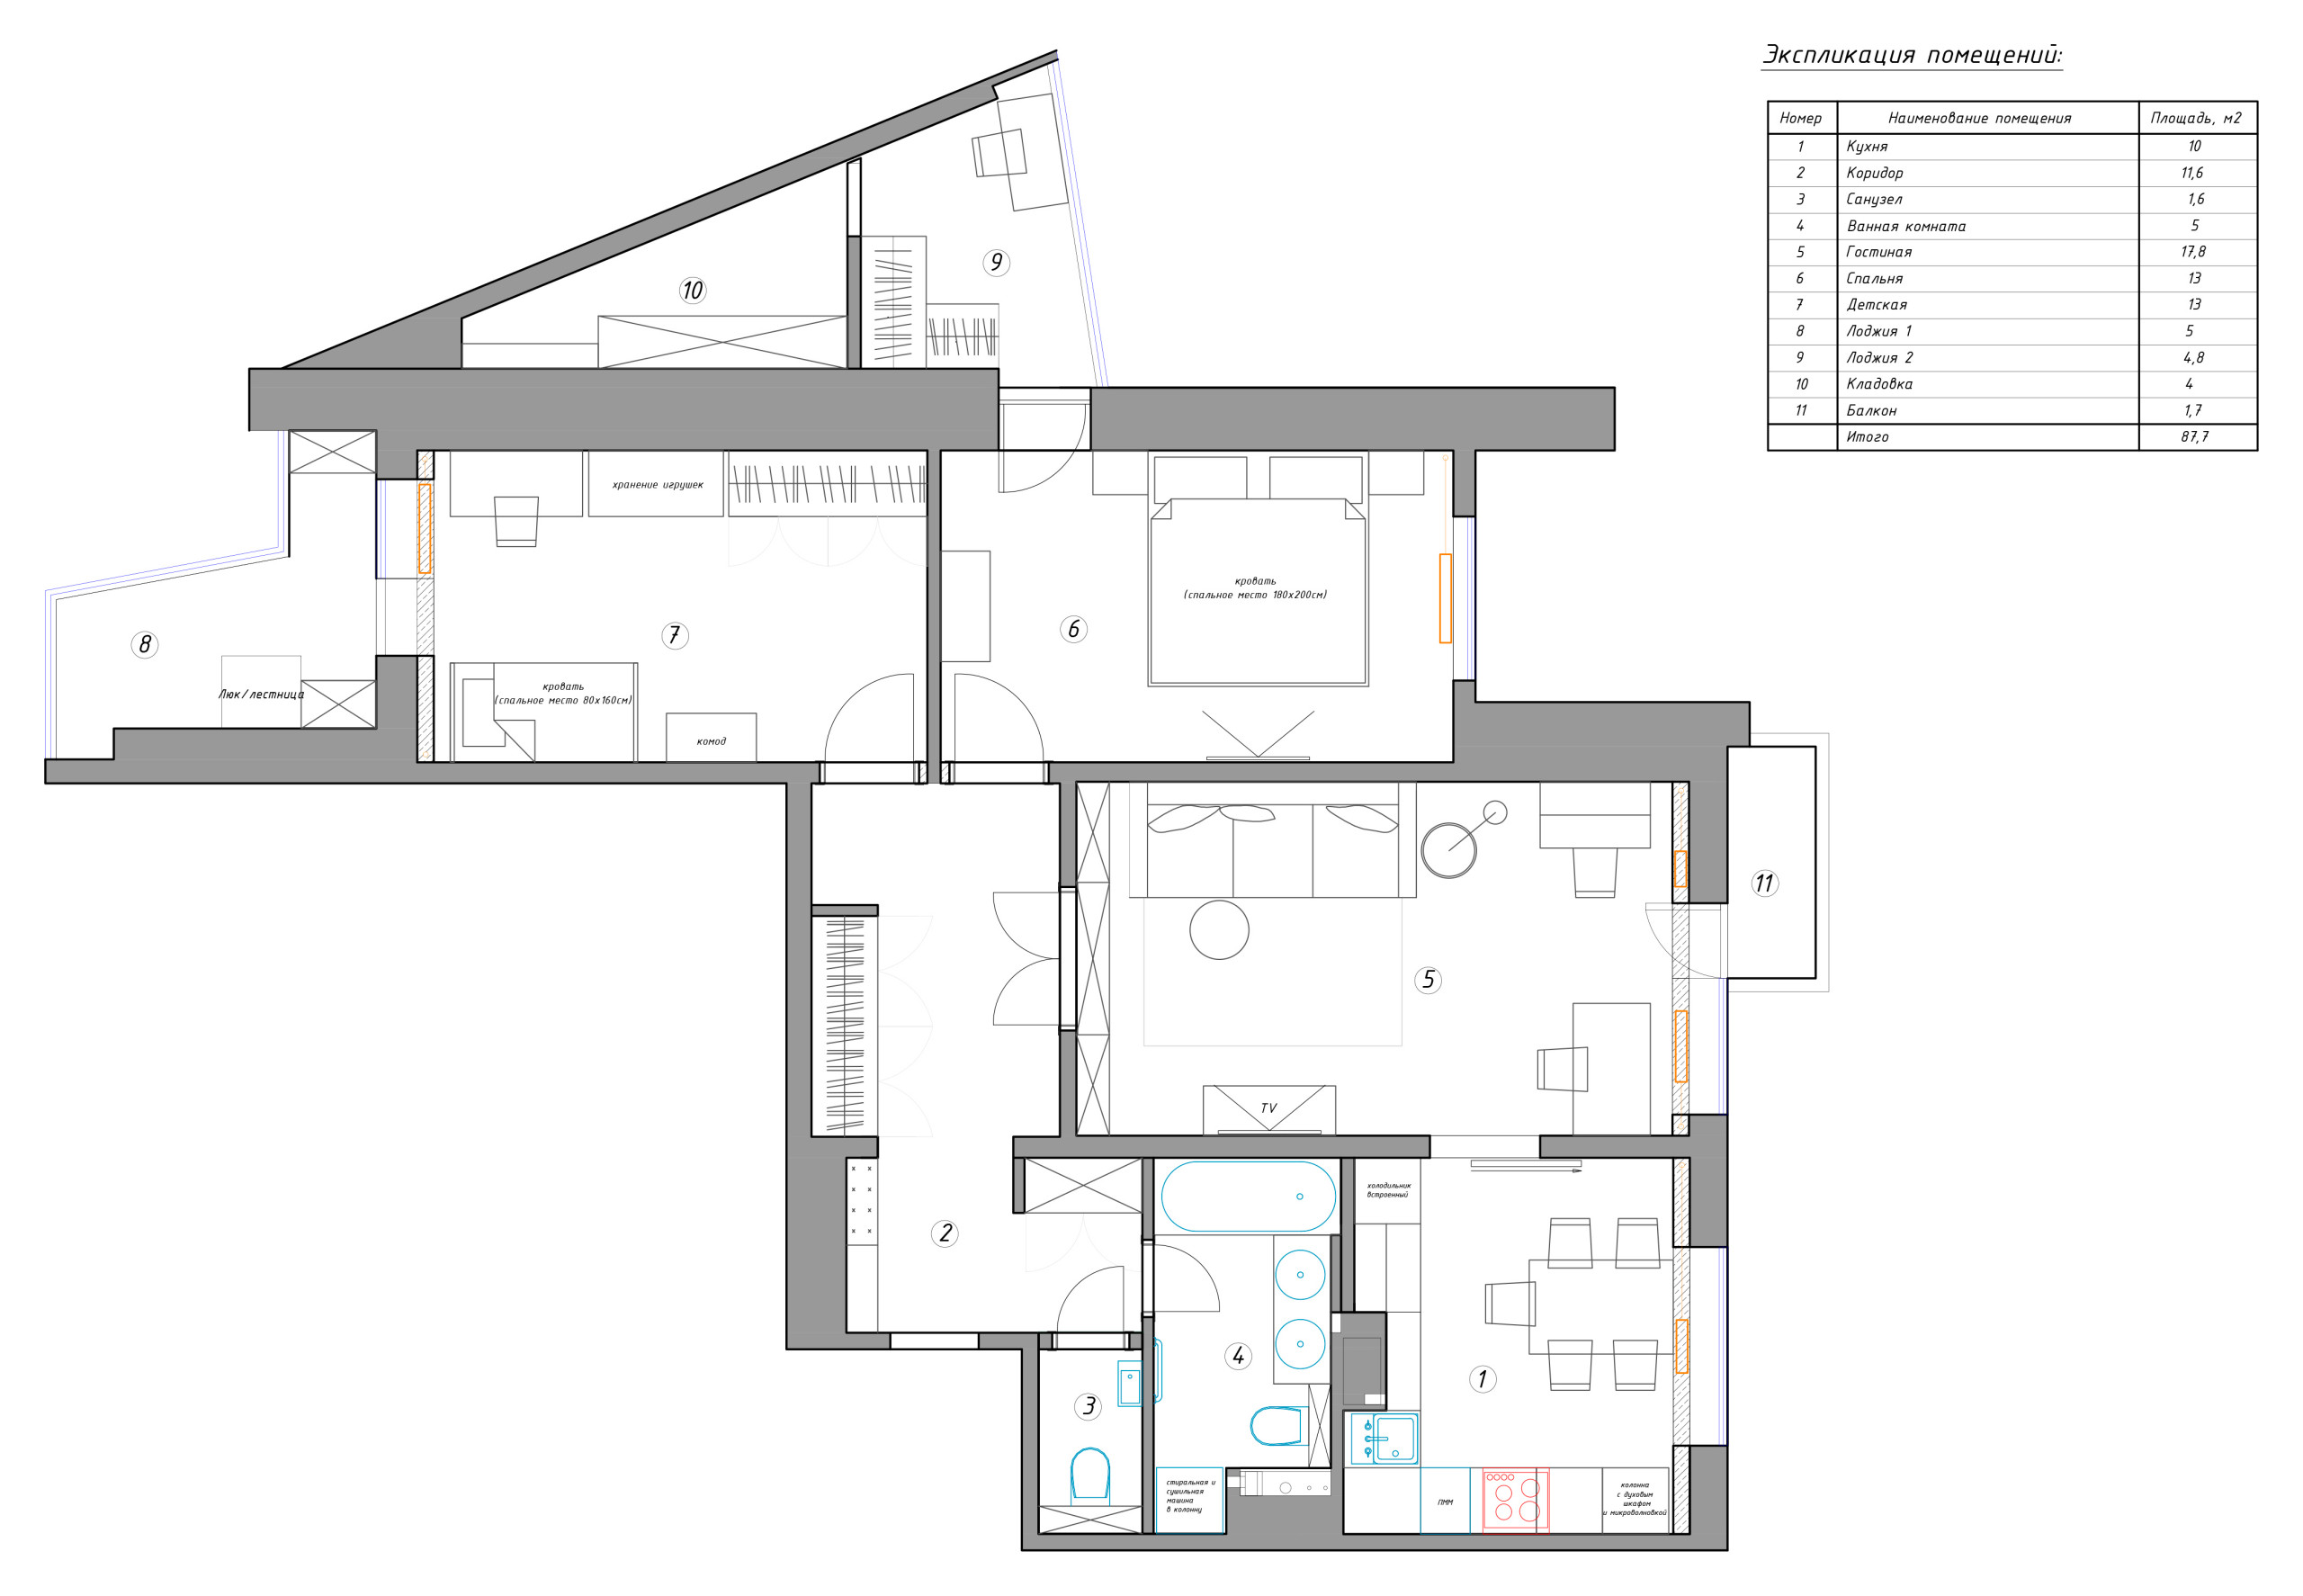 До и после: Квартира 87 кв.м с масштабной перепланировкой идеи для дома,интерьер и дизайн